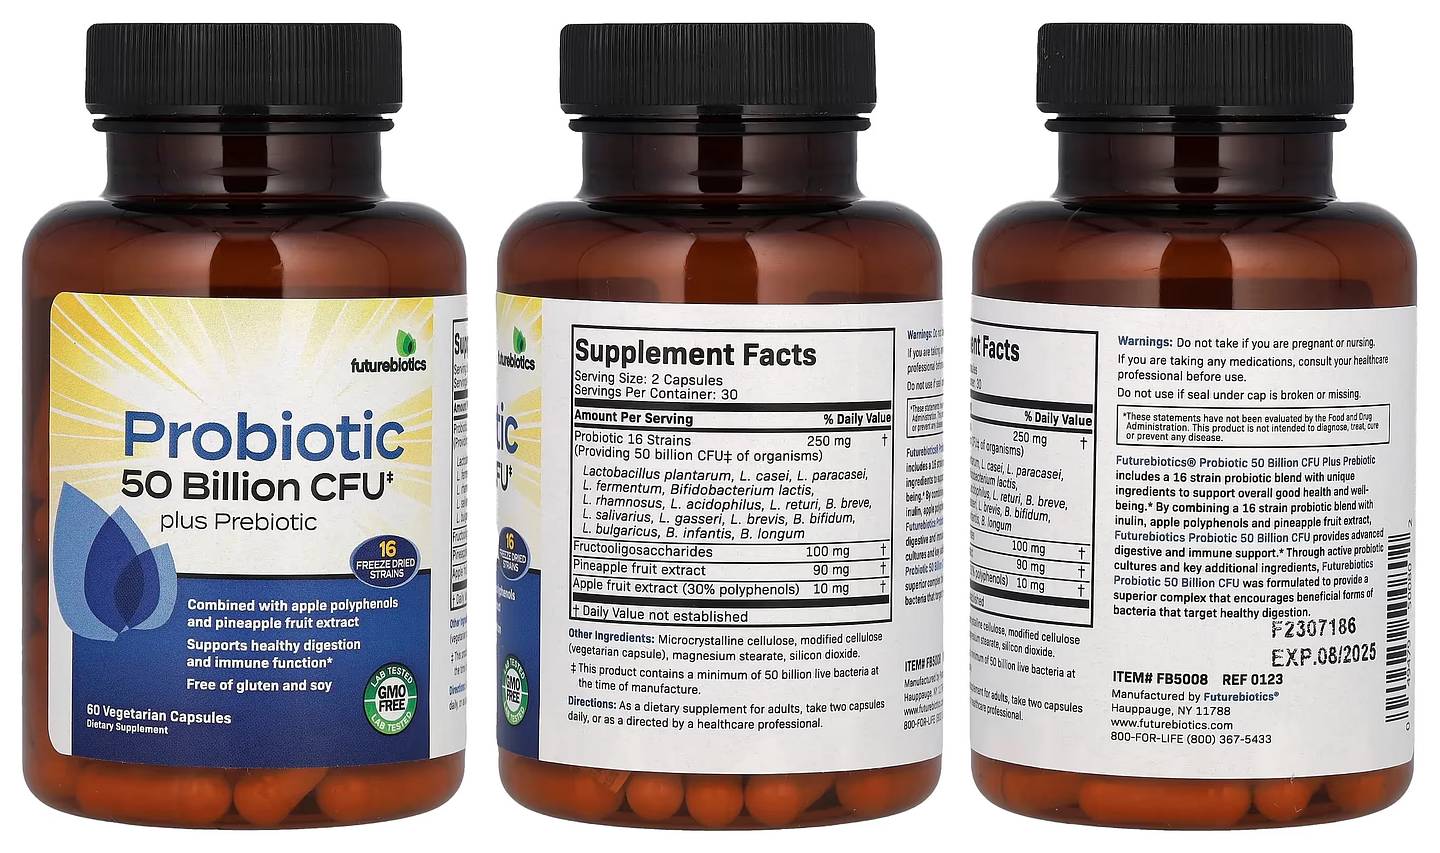 Futurebiotics, Probiotic Plus Prebiotic packaging